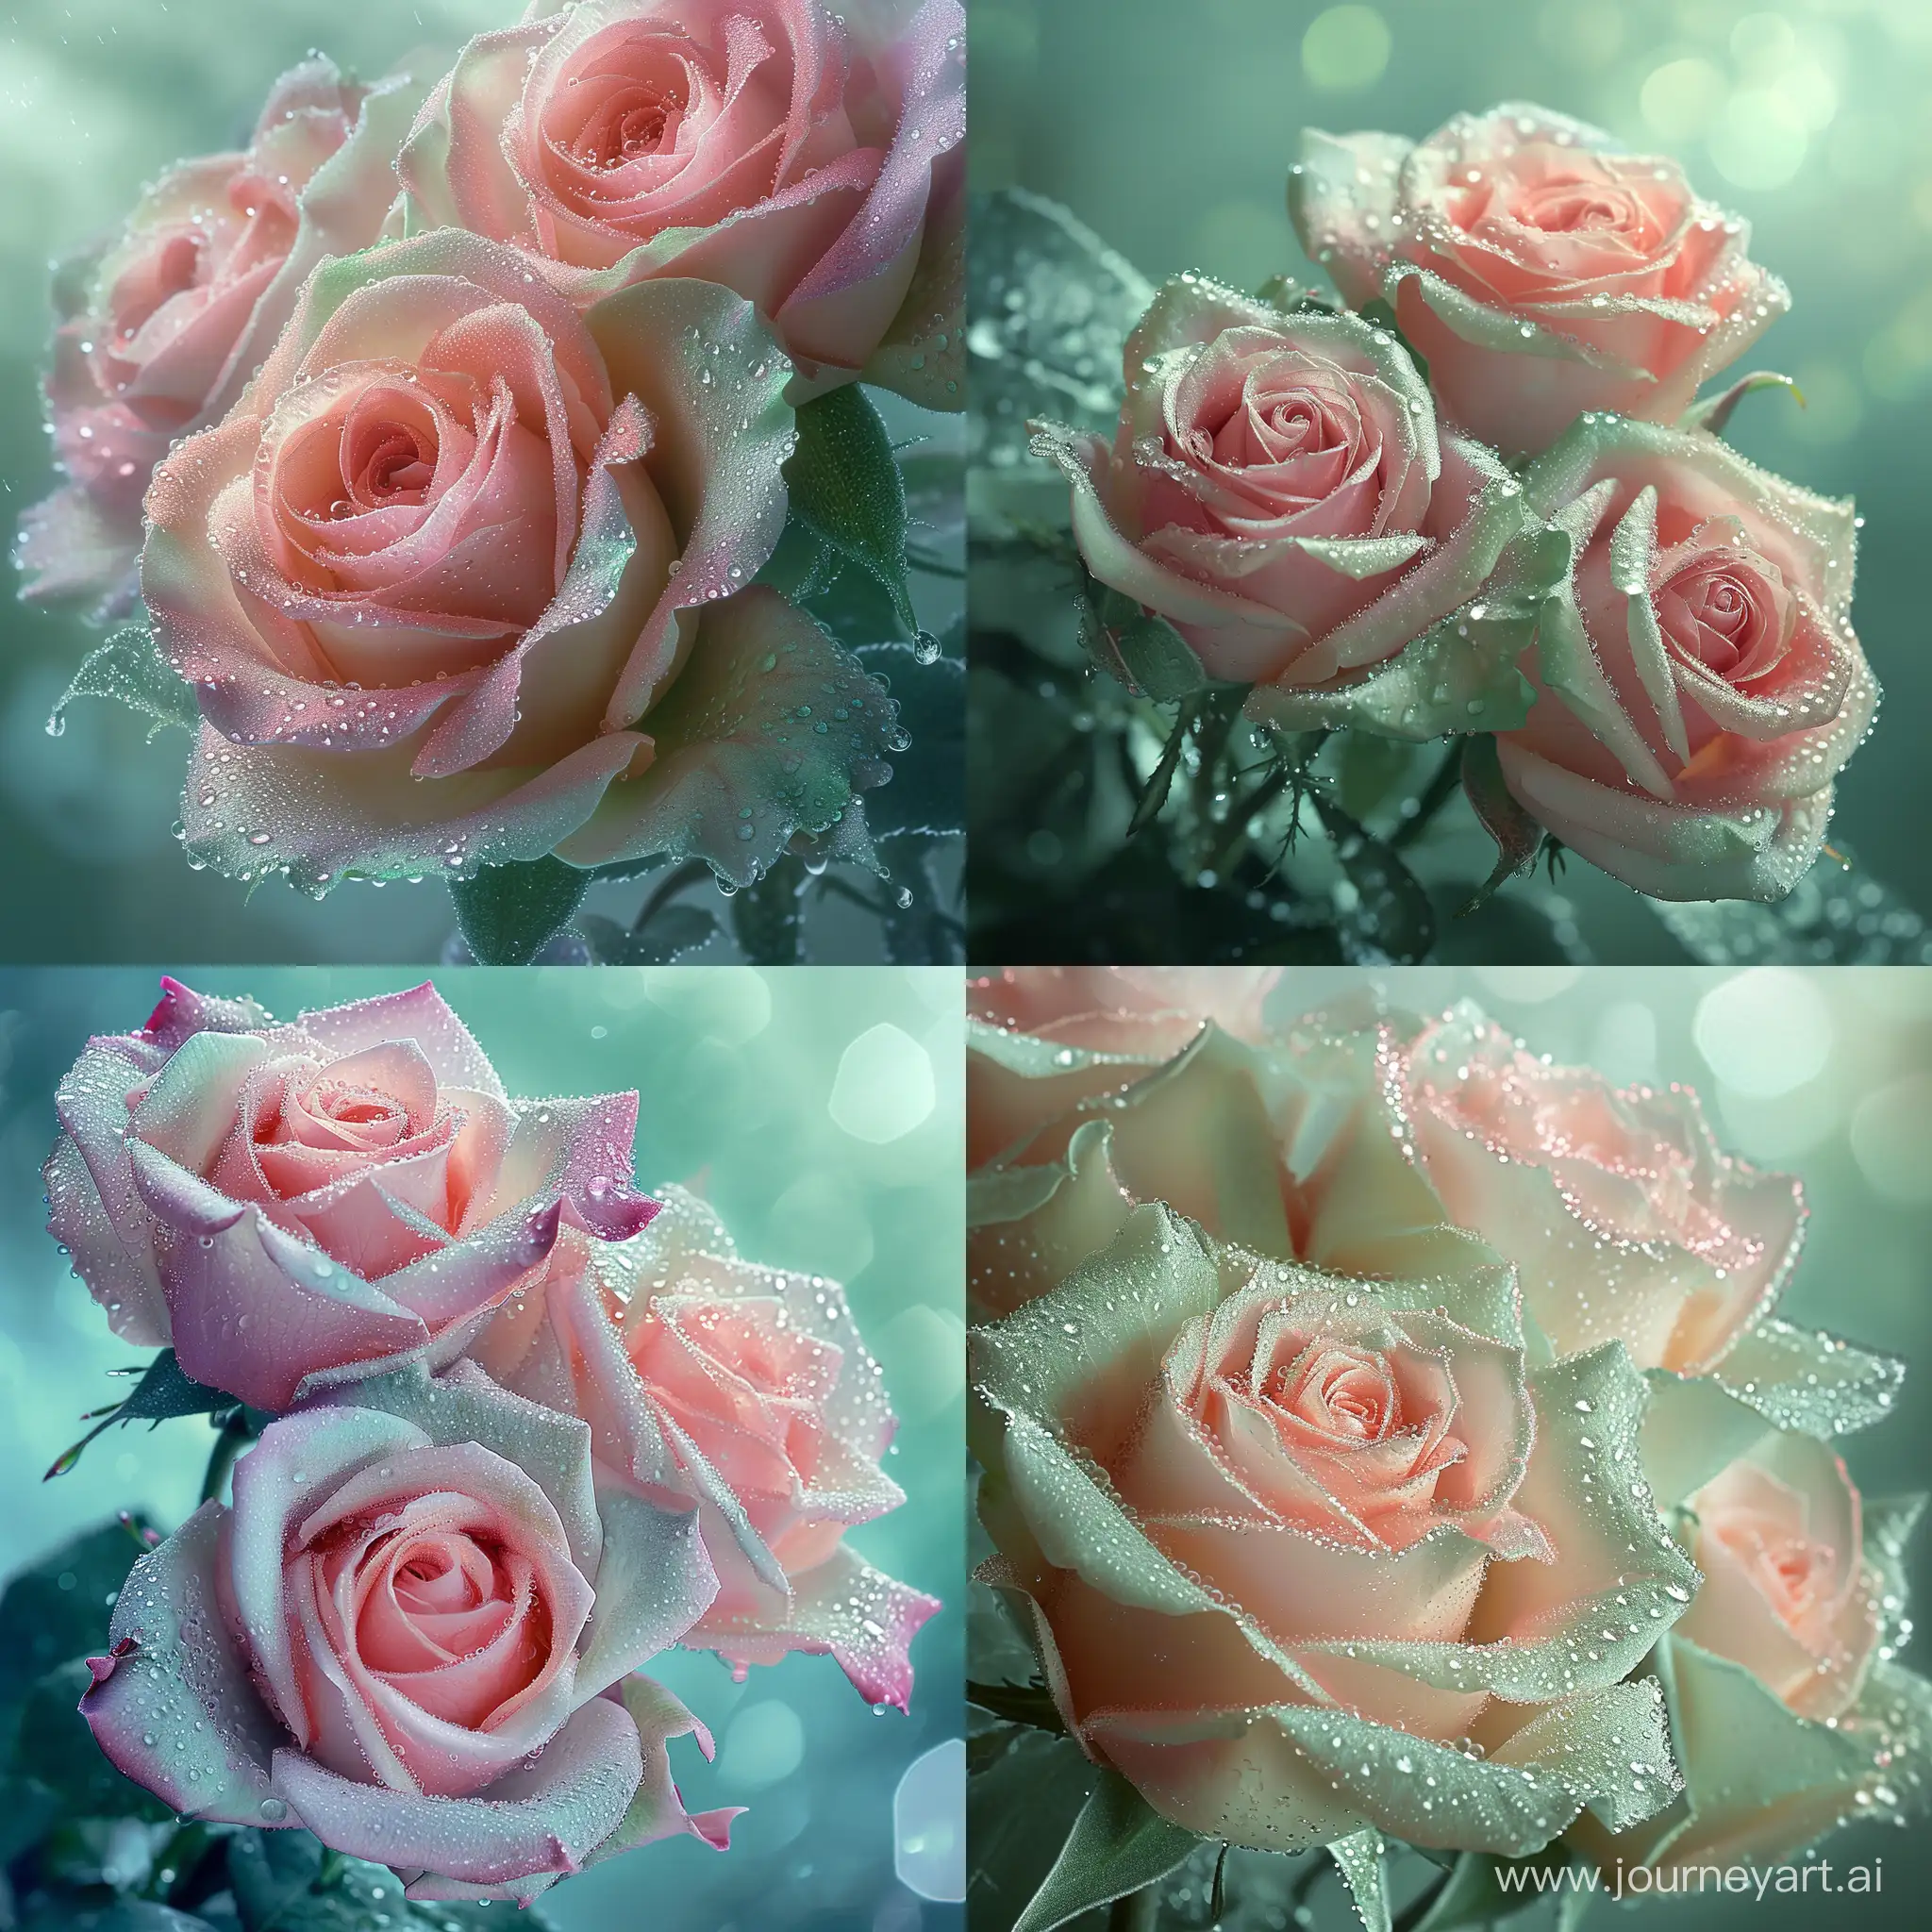 нежно-розово-мятный пышный букет роз, сложных,изумительных,волшебных нежных,цвет мята,искрящиеся капли росы,заря,волшебно,в пастельных прозрачных тонах,гипер реалистично,красивый